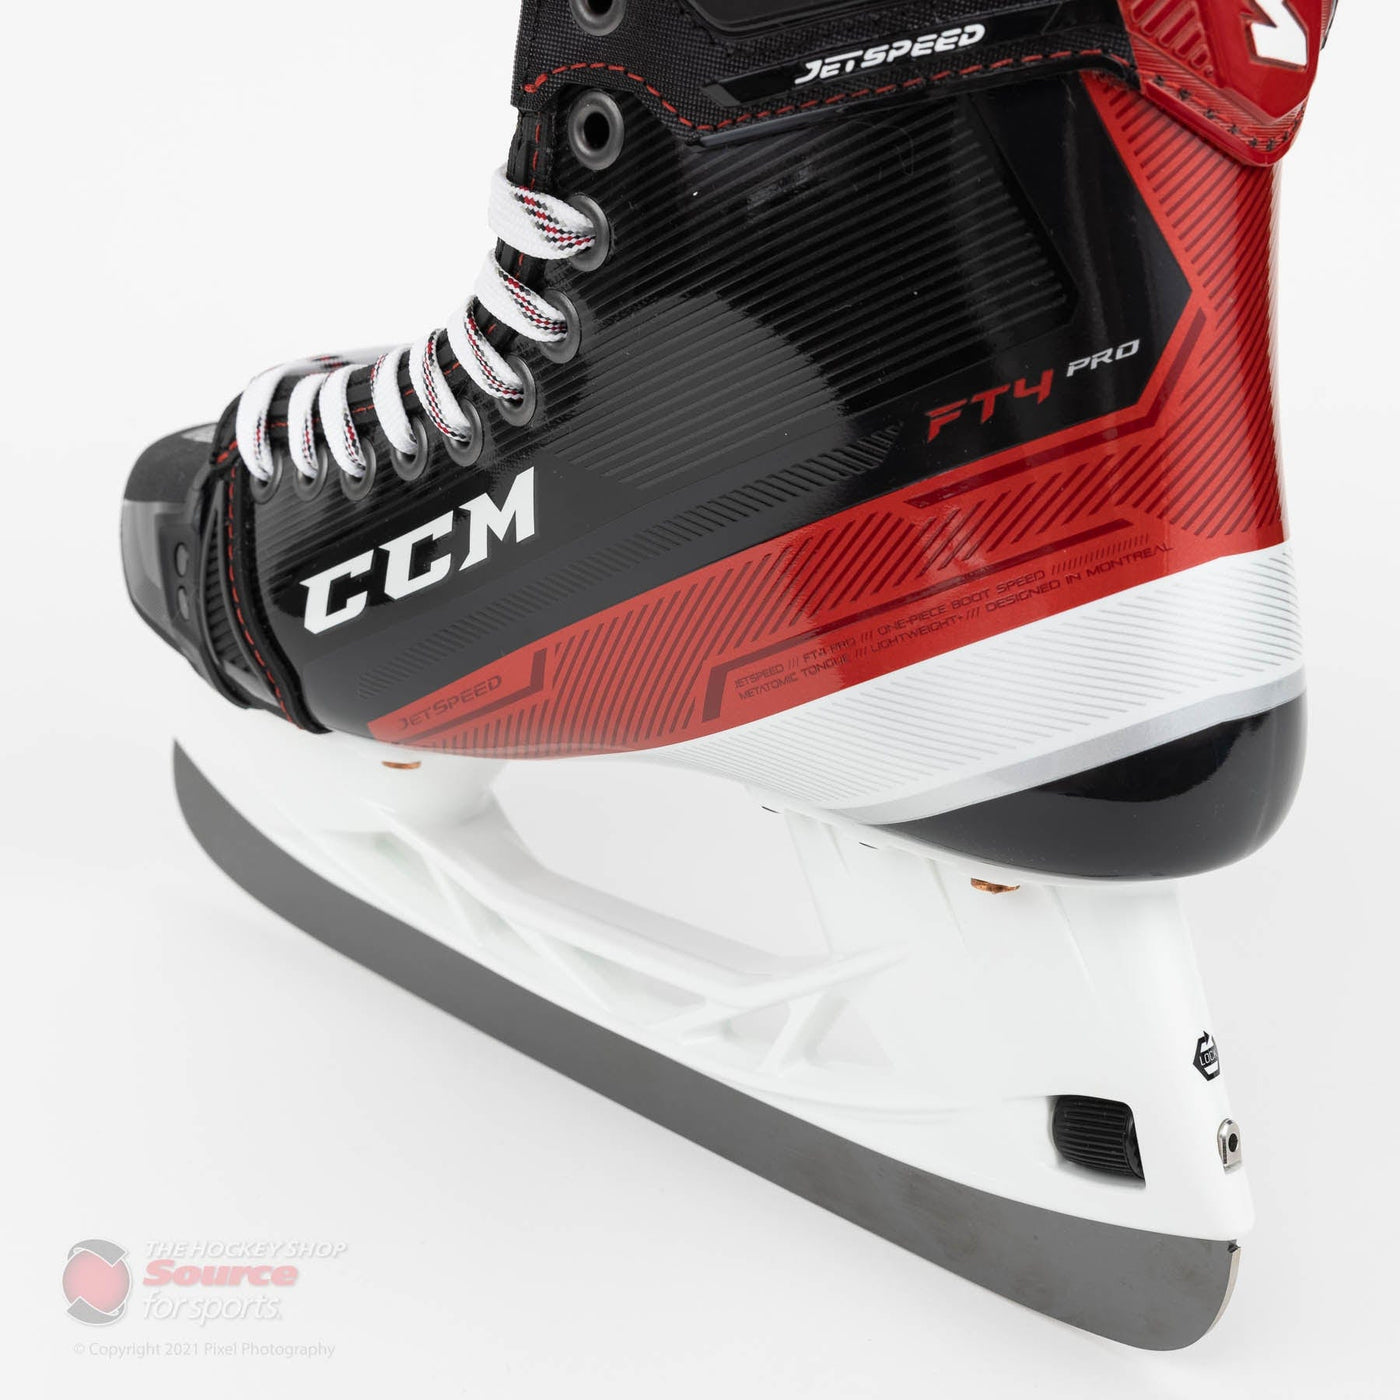 CCM Jetspeed FT4 Pro Senior Hockey Skates